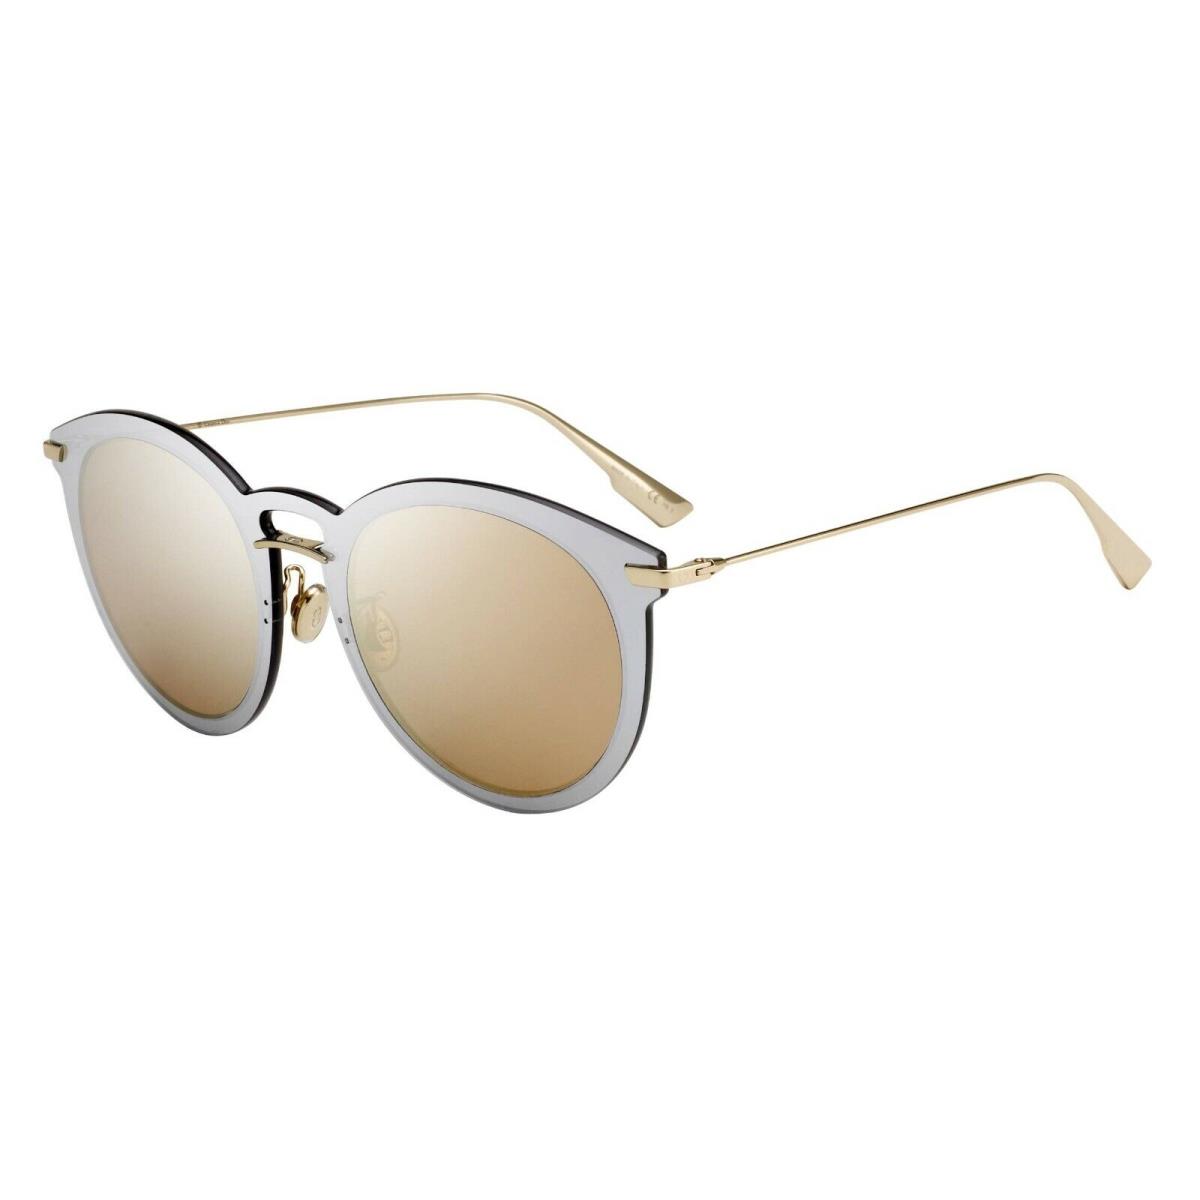 Dior sunglasses ULTIMEF AVBSQ GOLD - Gold & Silver Frame, Gold Lens